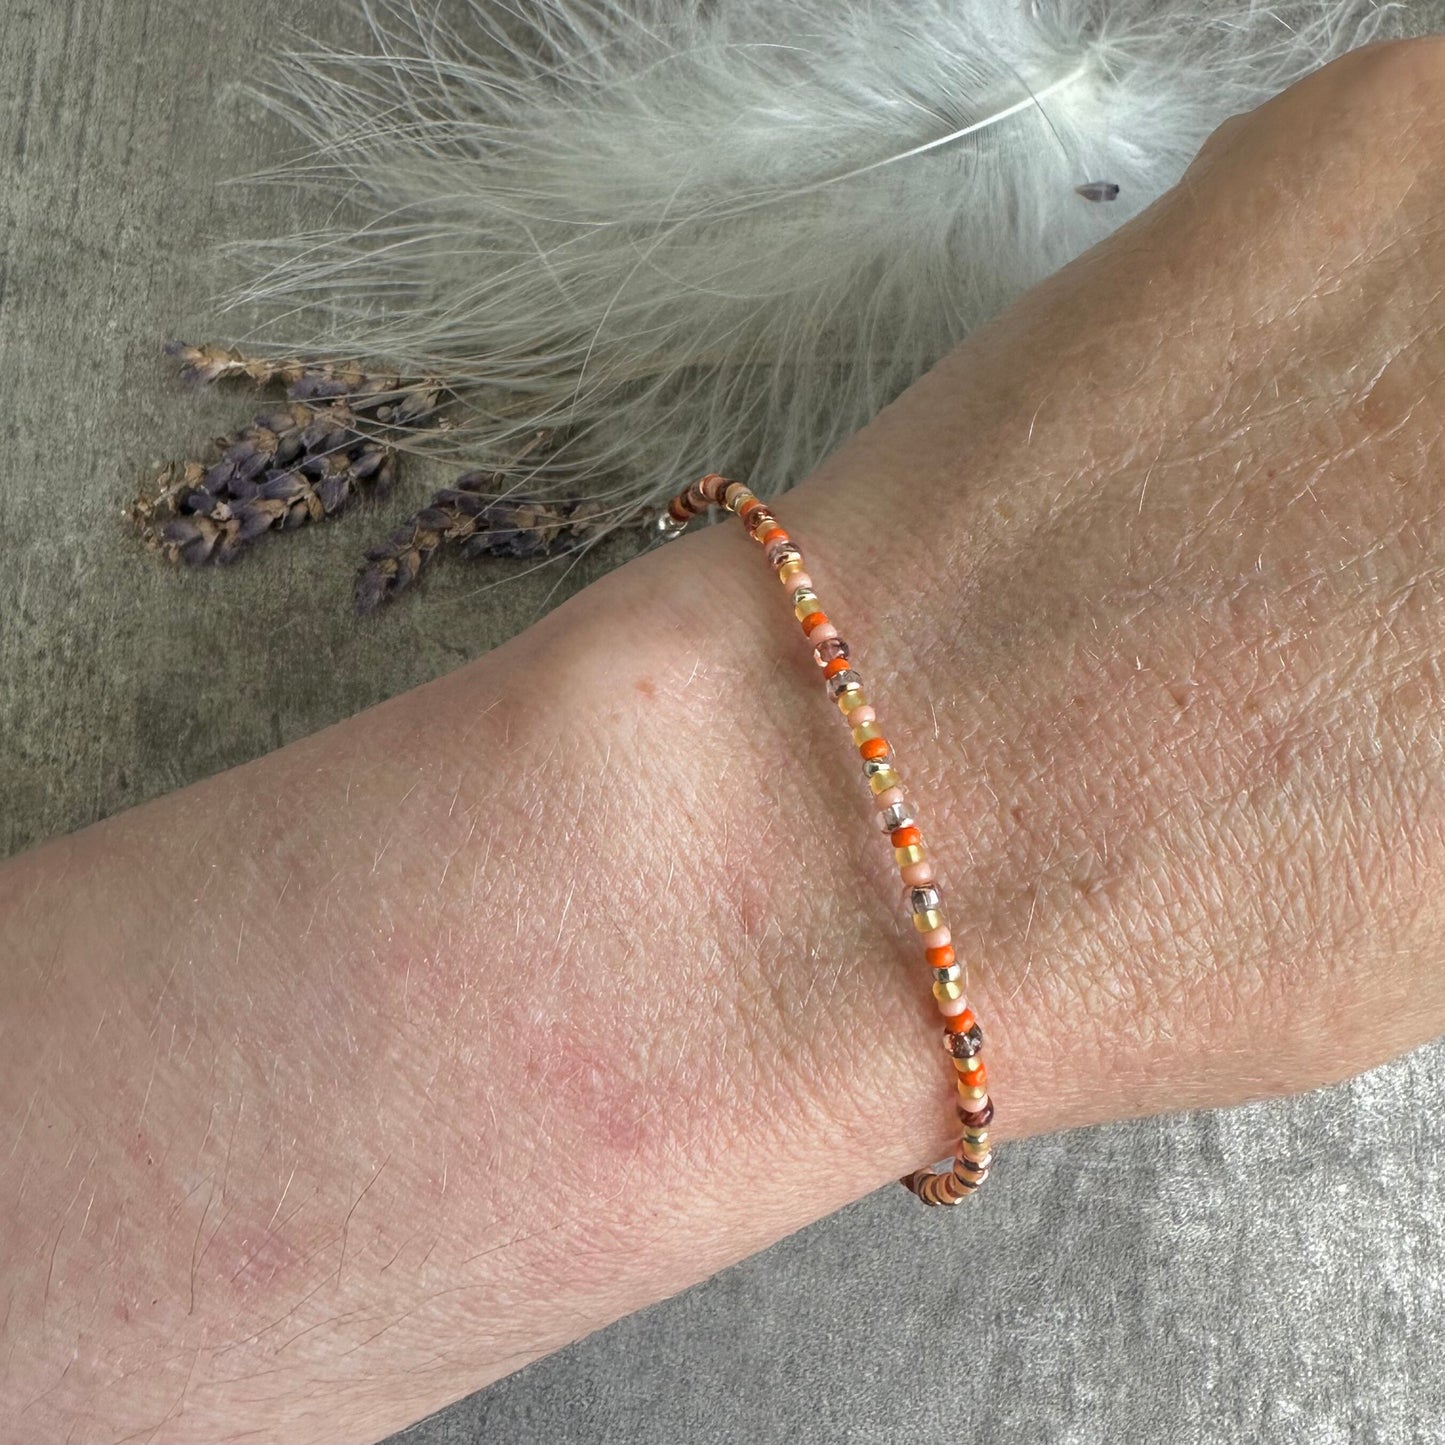 Thin Orange Bracelet with seed beads Shades of Orange